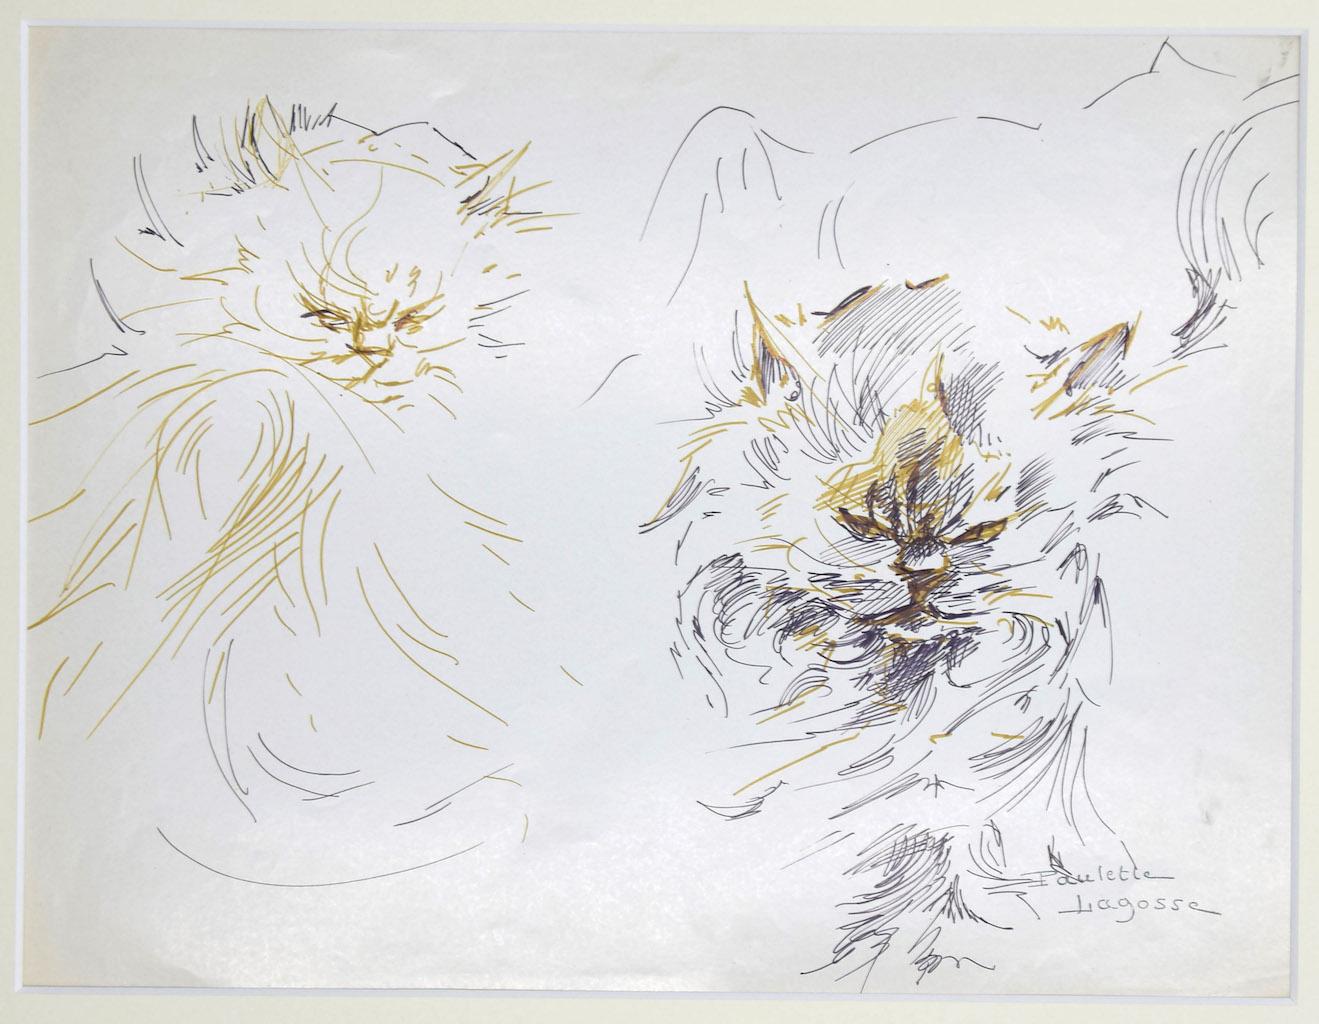 Les chats - Stylo sur papier de M. P. Lagosse - 1970